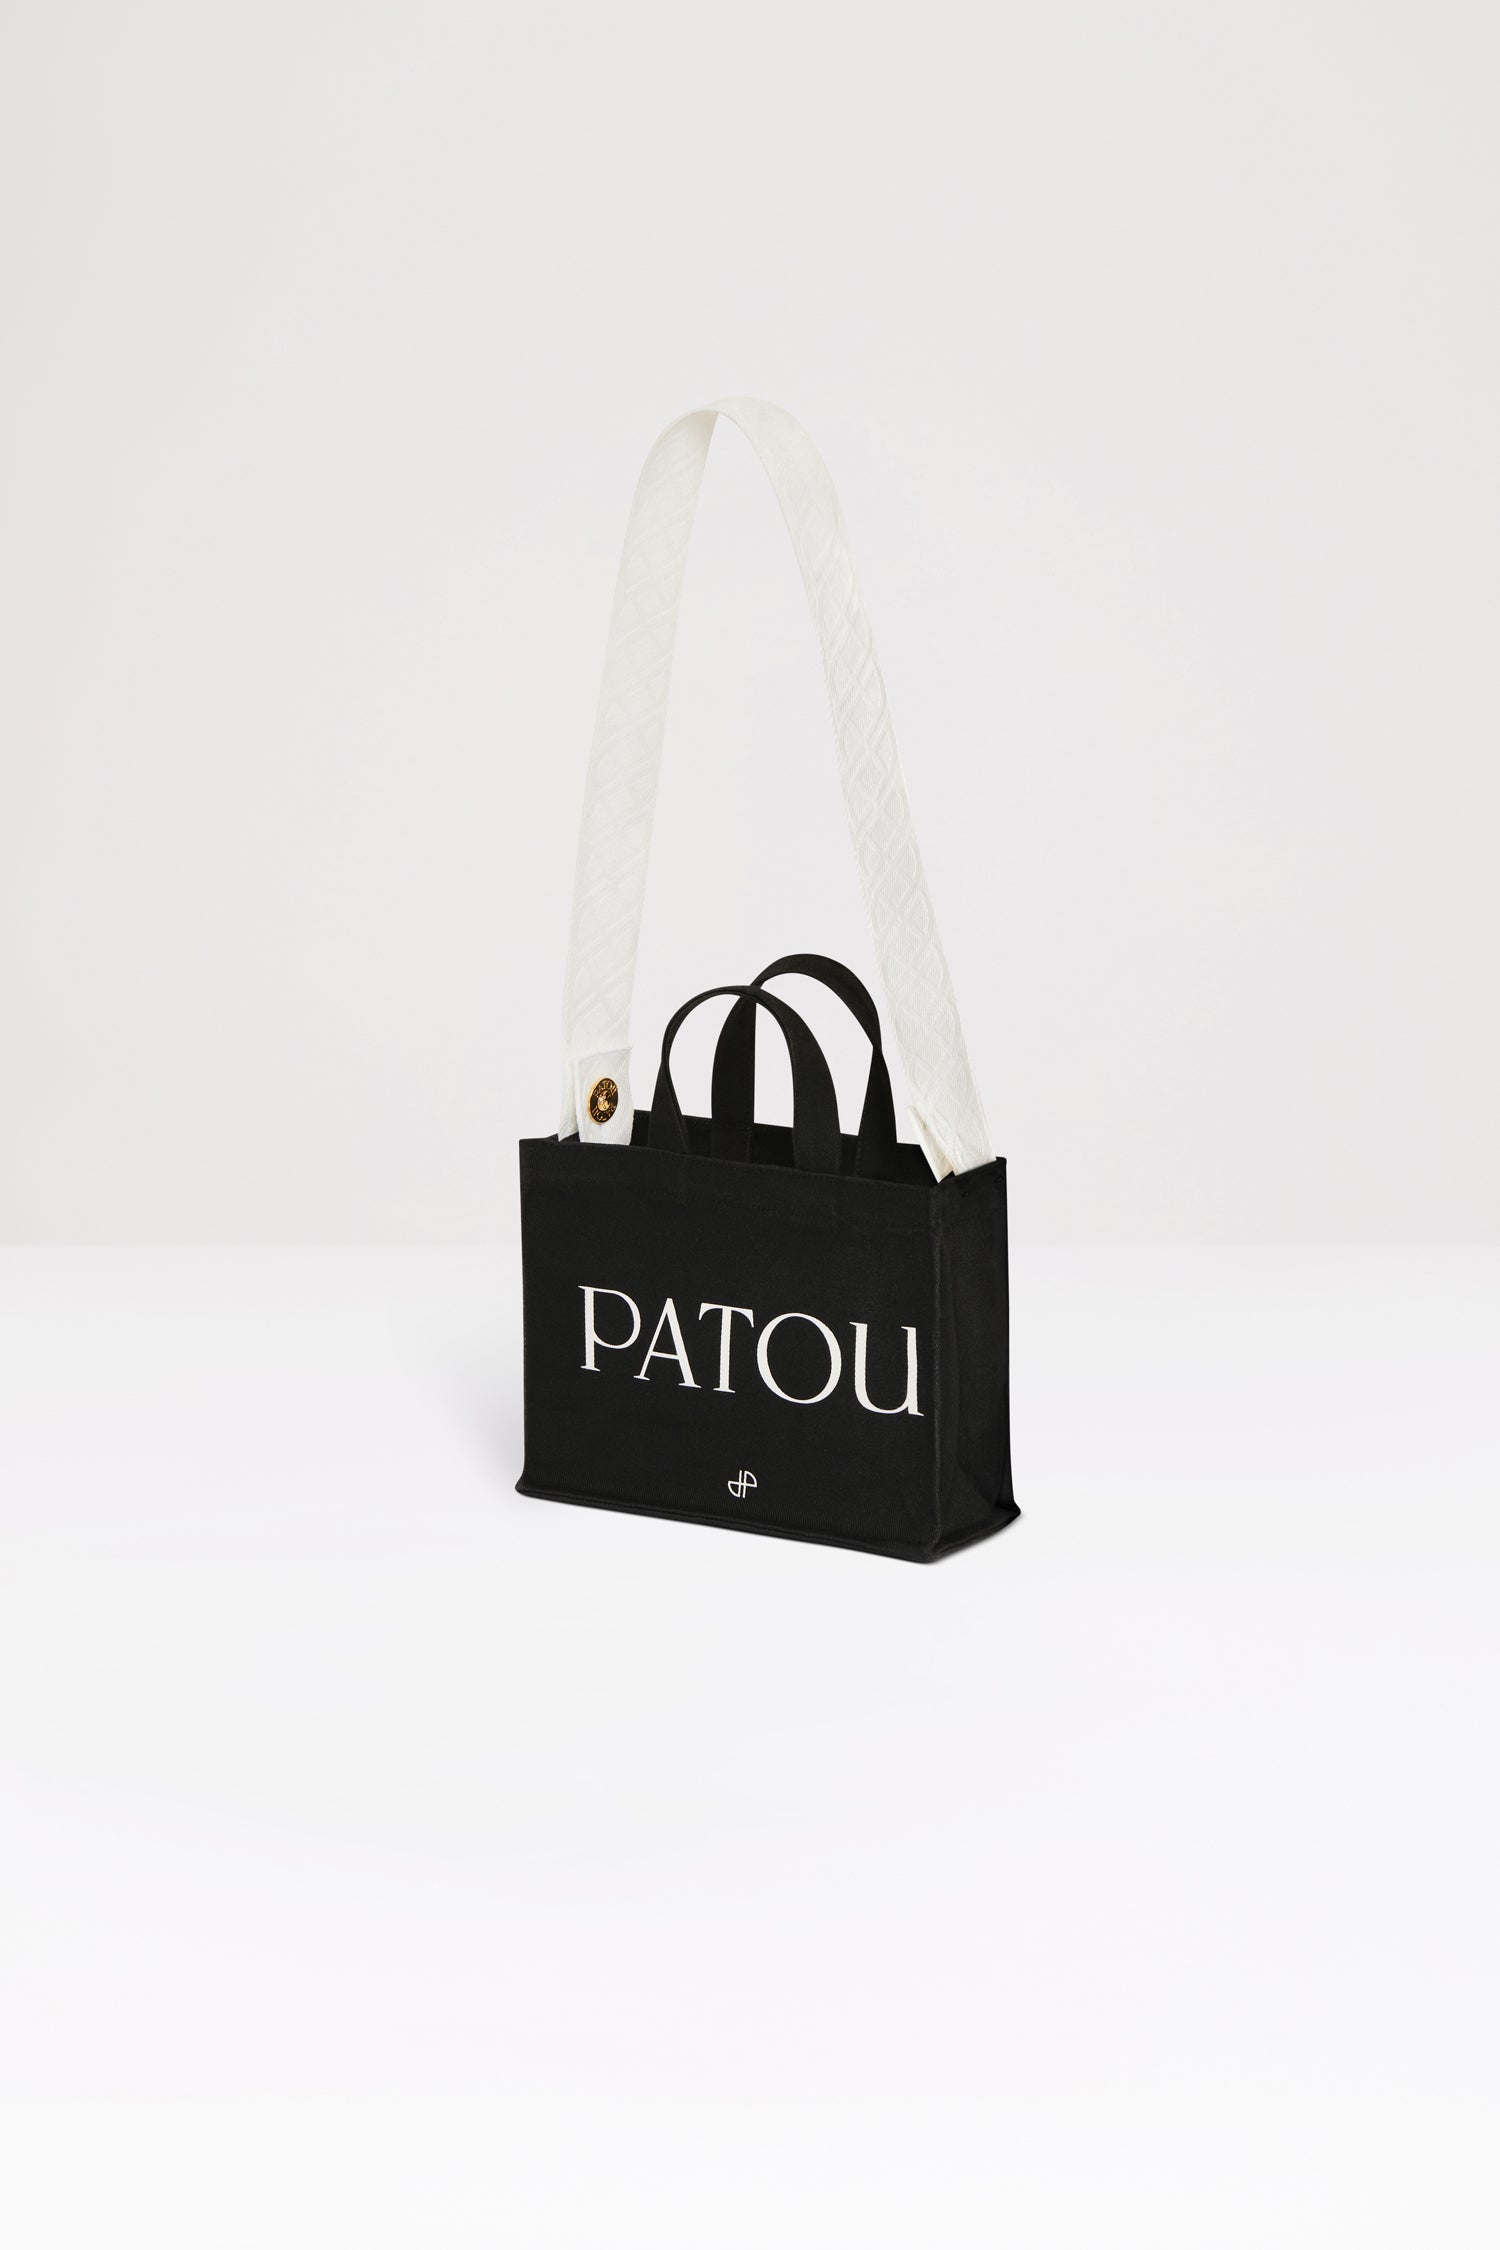 Patou | オーガニックコットン スモール パトゥ キャンバストート